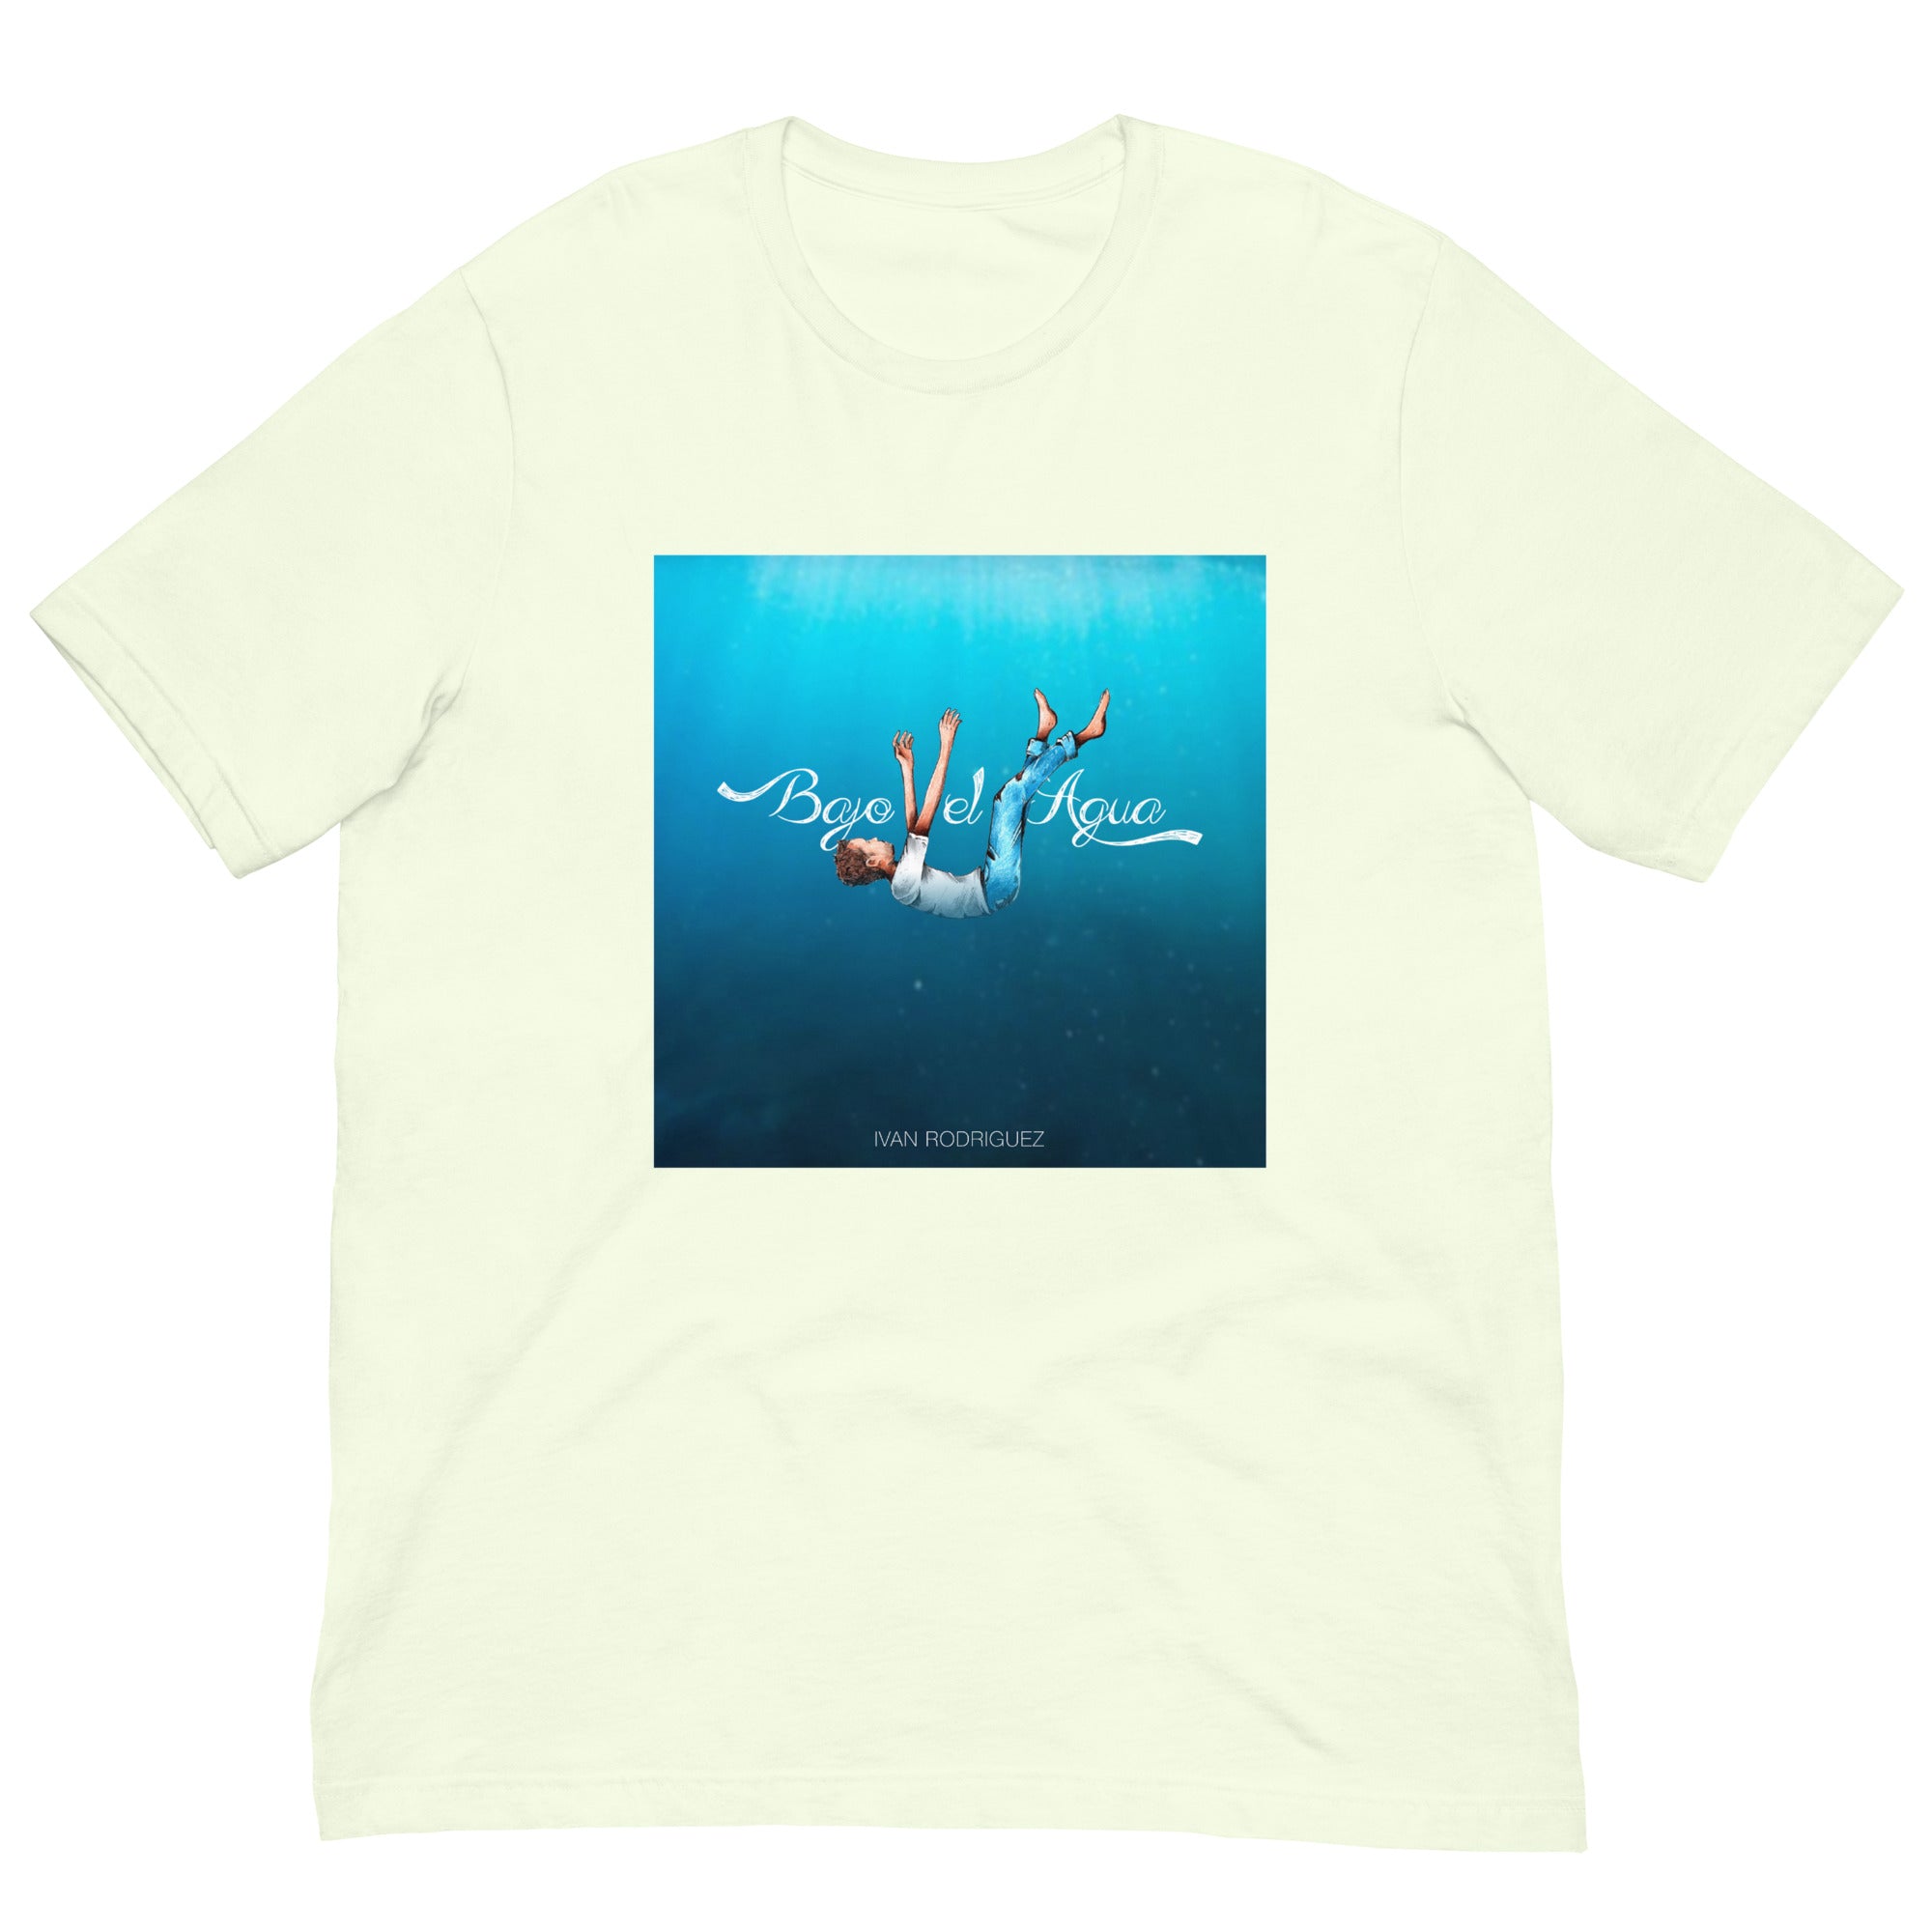 Ivan Rodriguez - "Bajo El Agua" - Unisex t-shirt